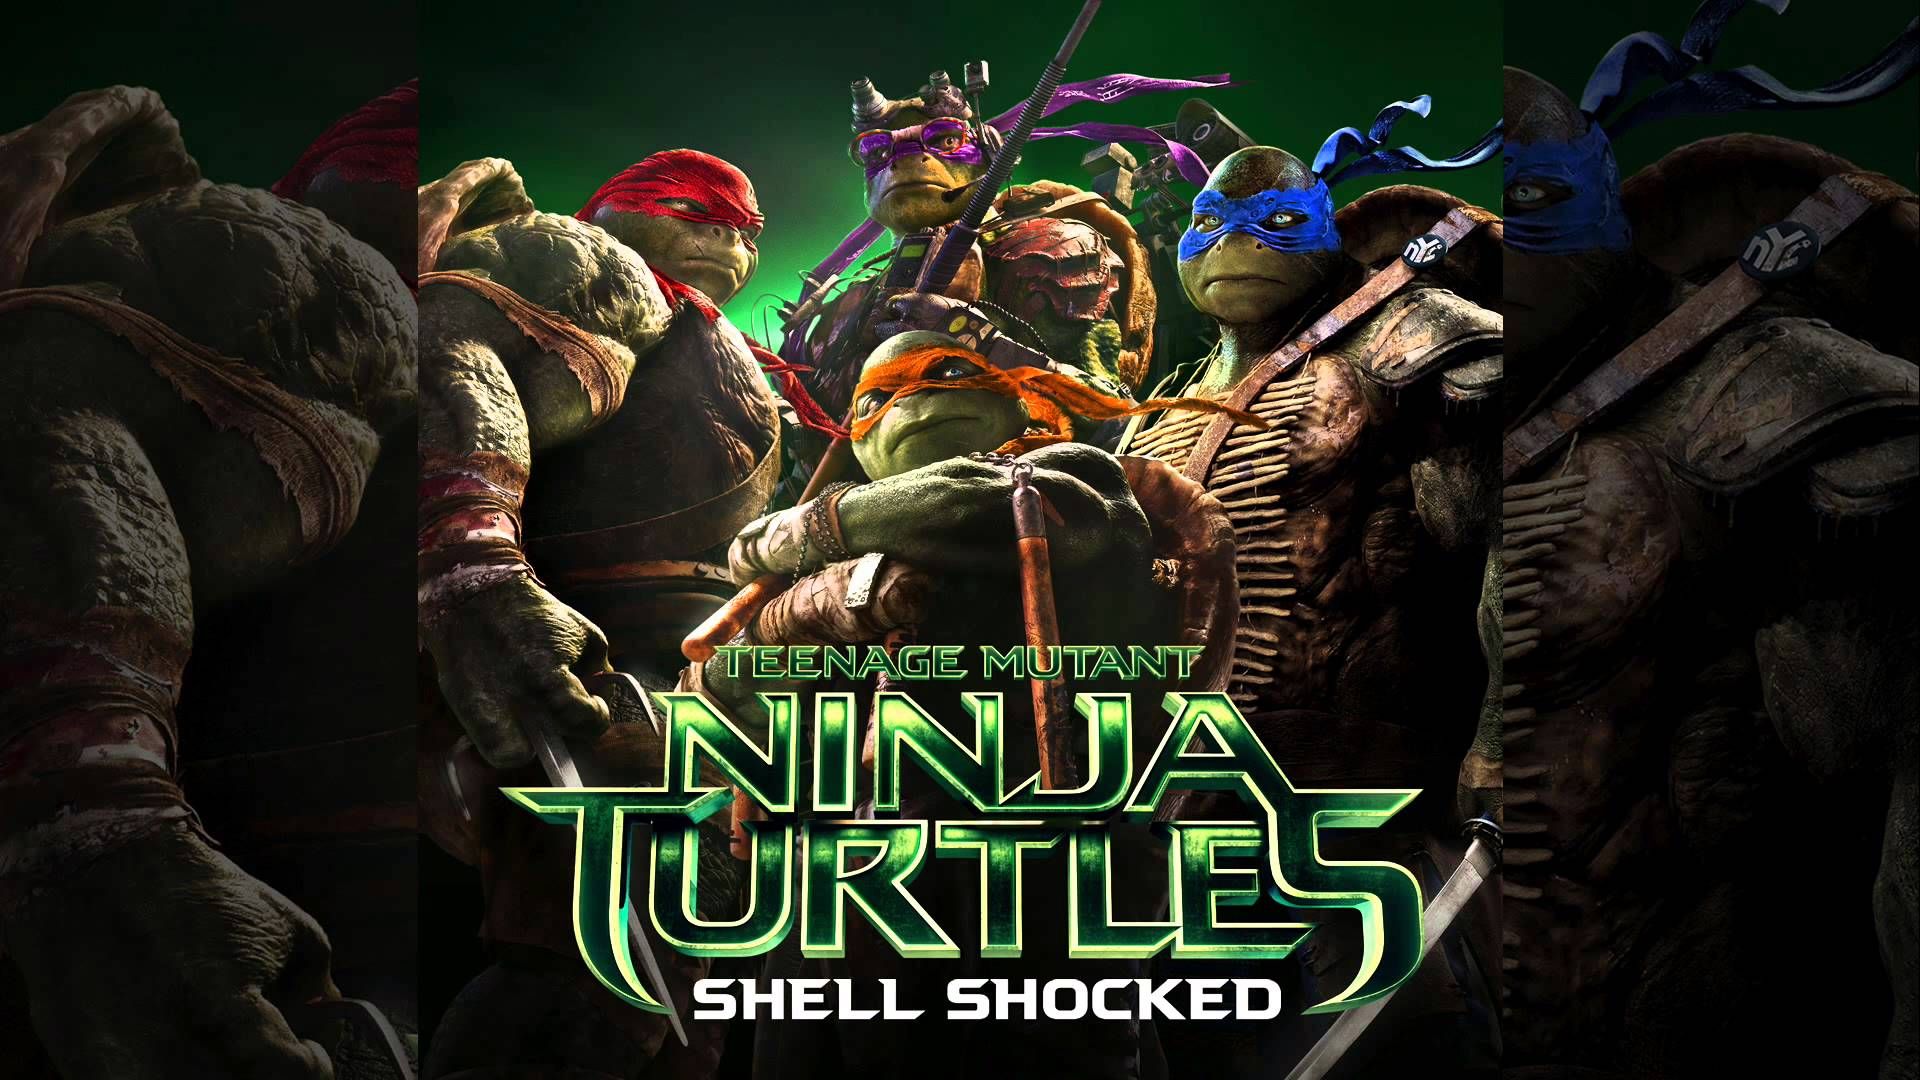 В саундтреке к новому саундтреку 'Черепашки-ниндзя' есть рэп-трек о черепахах, потому что, конечно, он есть